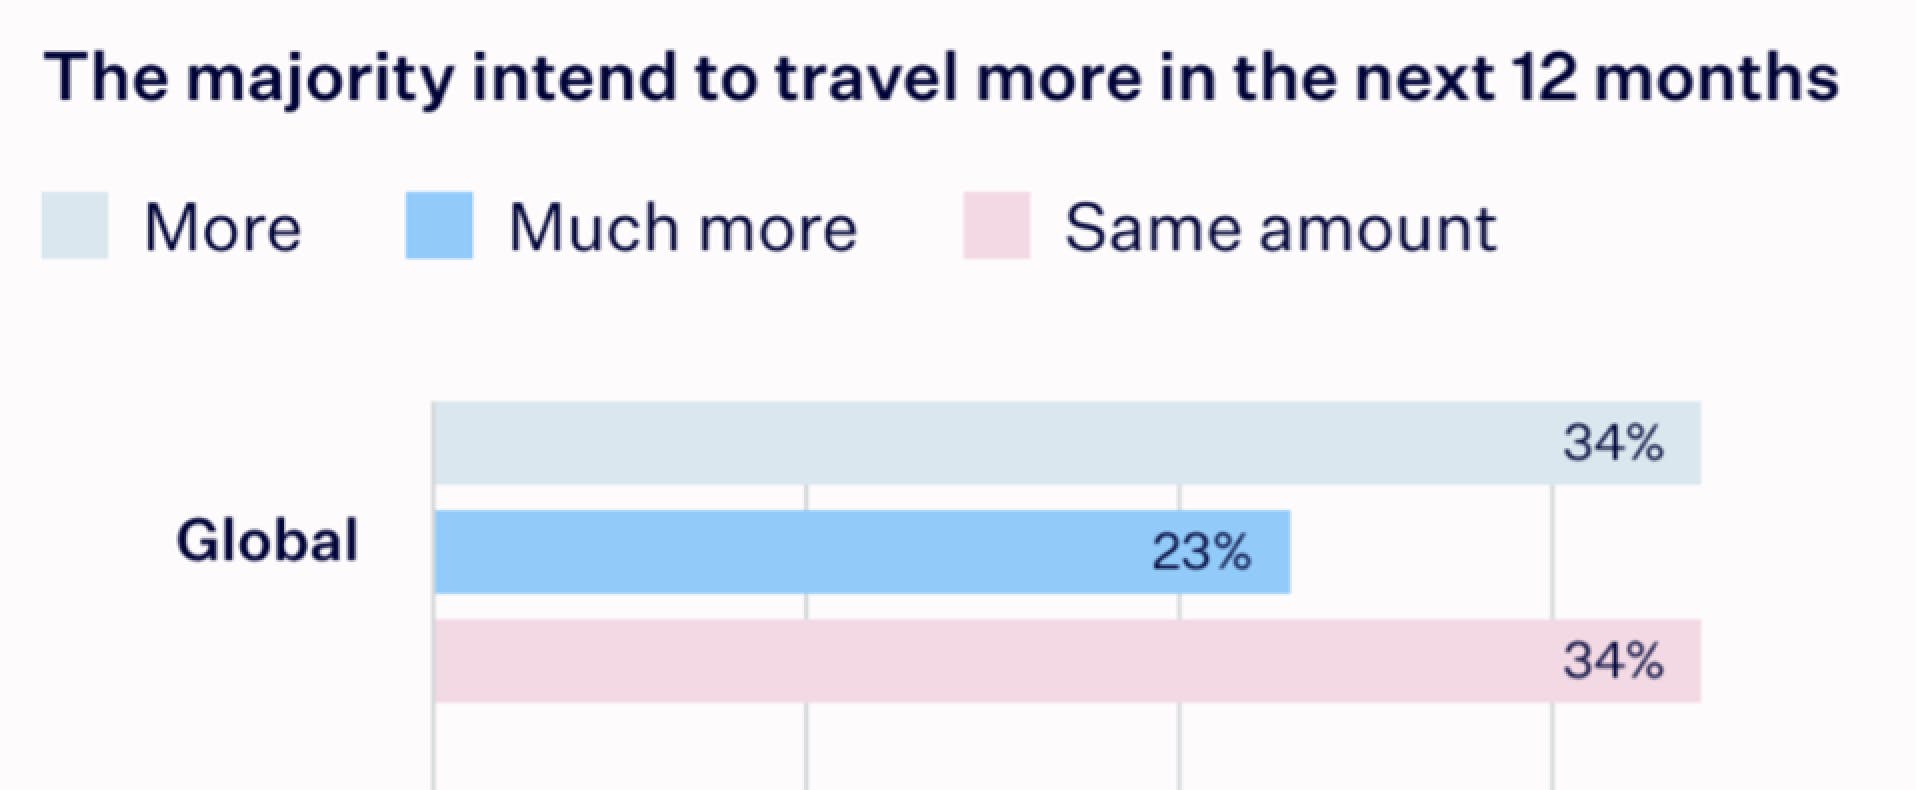 Die Mehrheit der Reisenden beabsichtigt, in den nächsten 12 Monaten mehr zu reisen